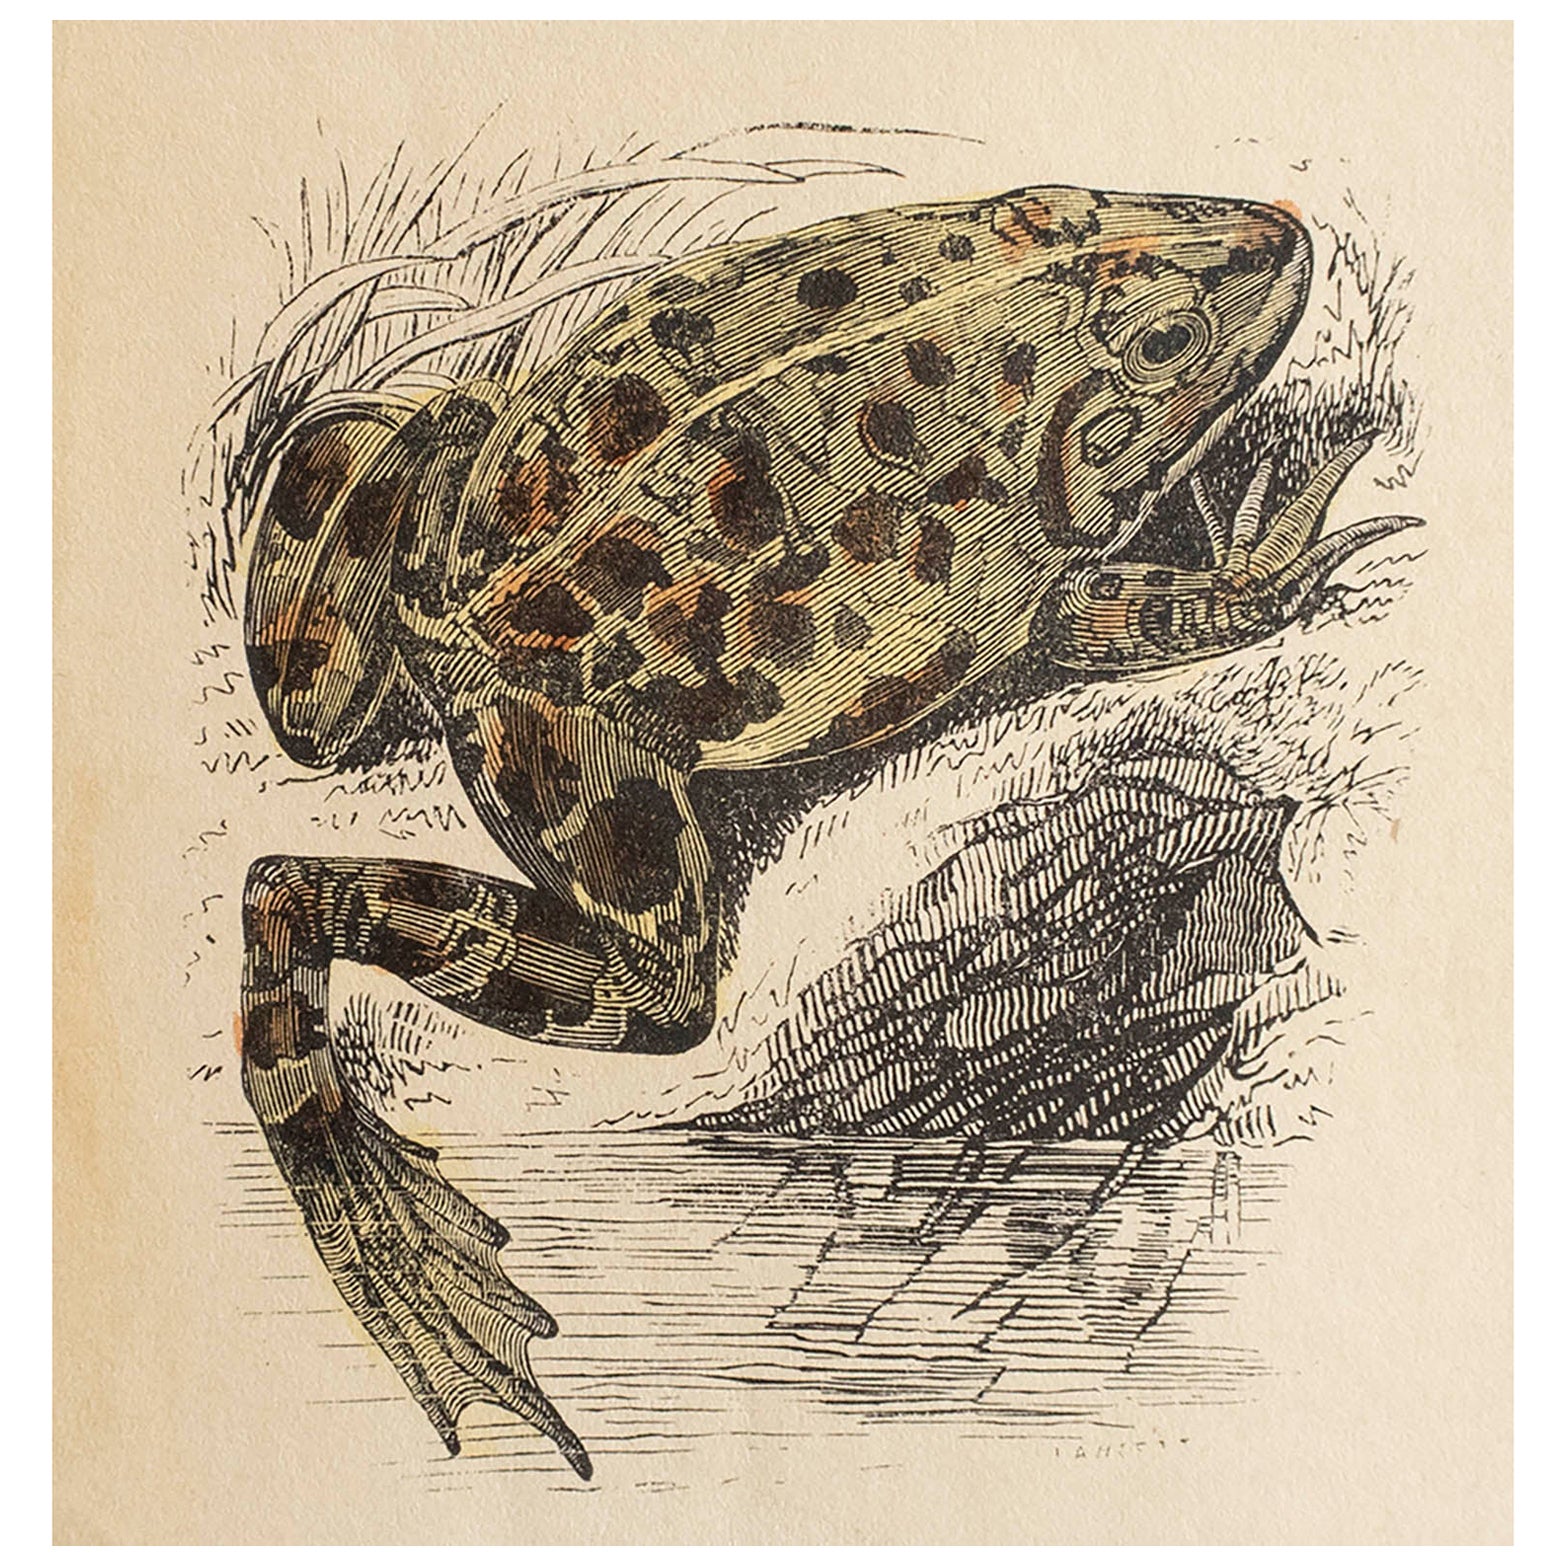  Original Antique Print of A Frog, circa 1850